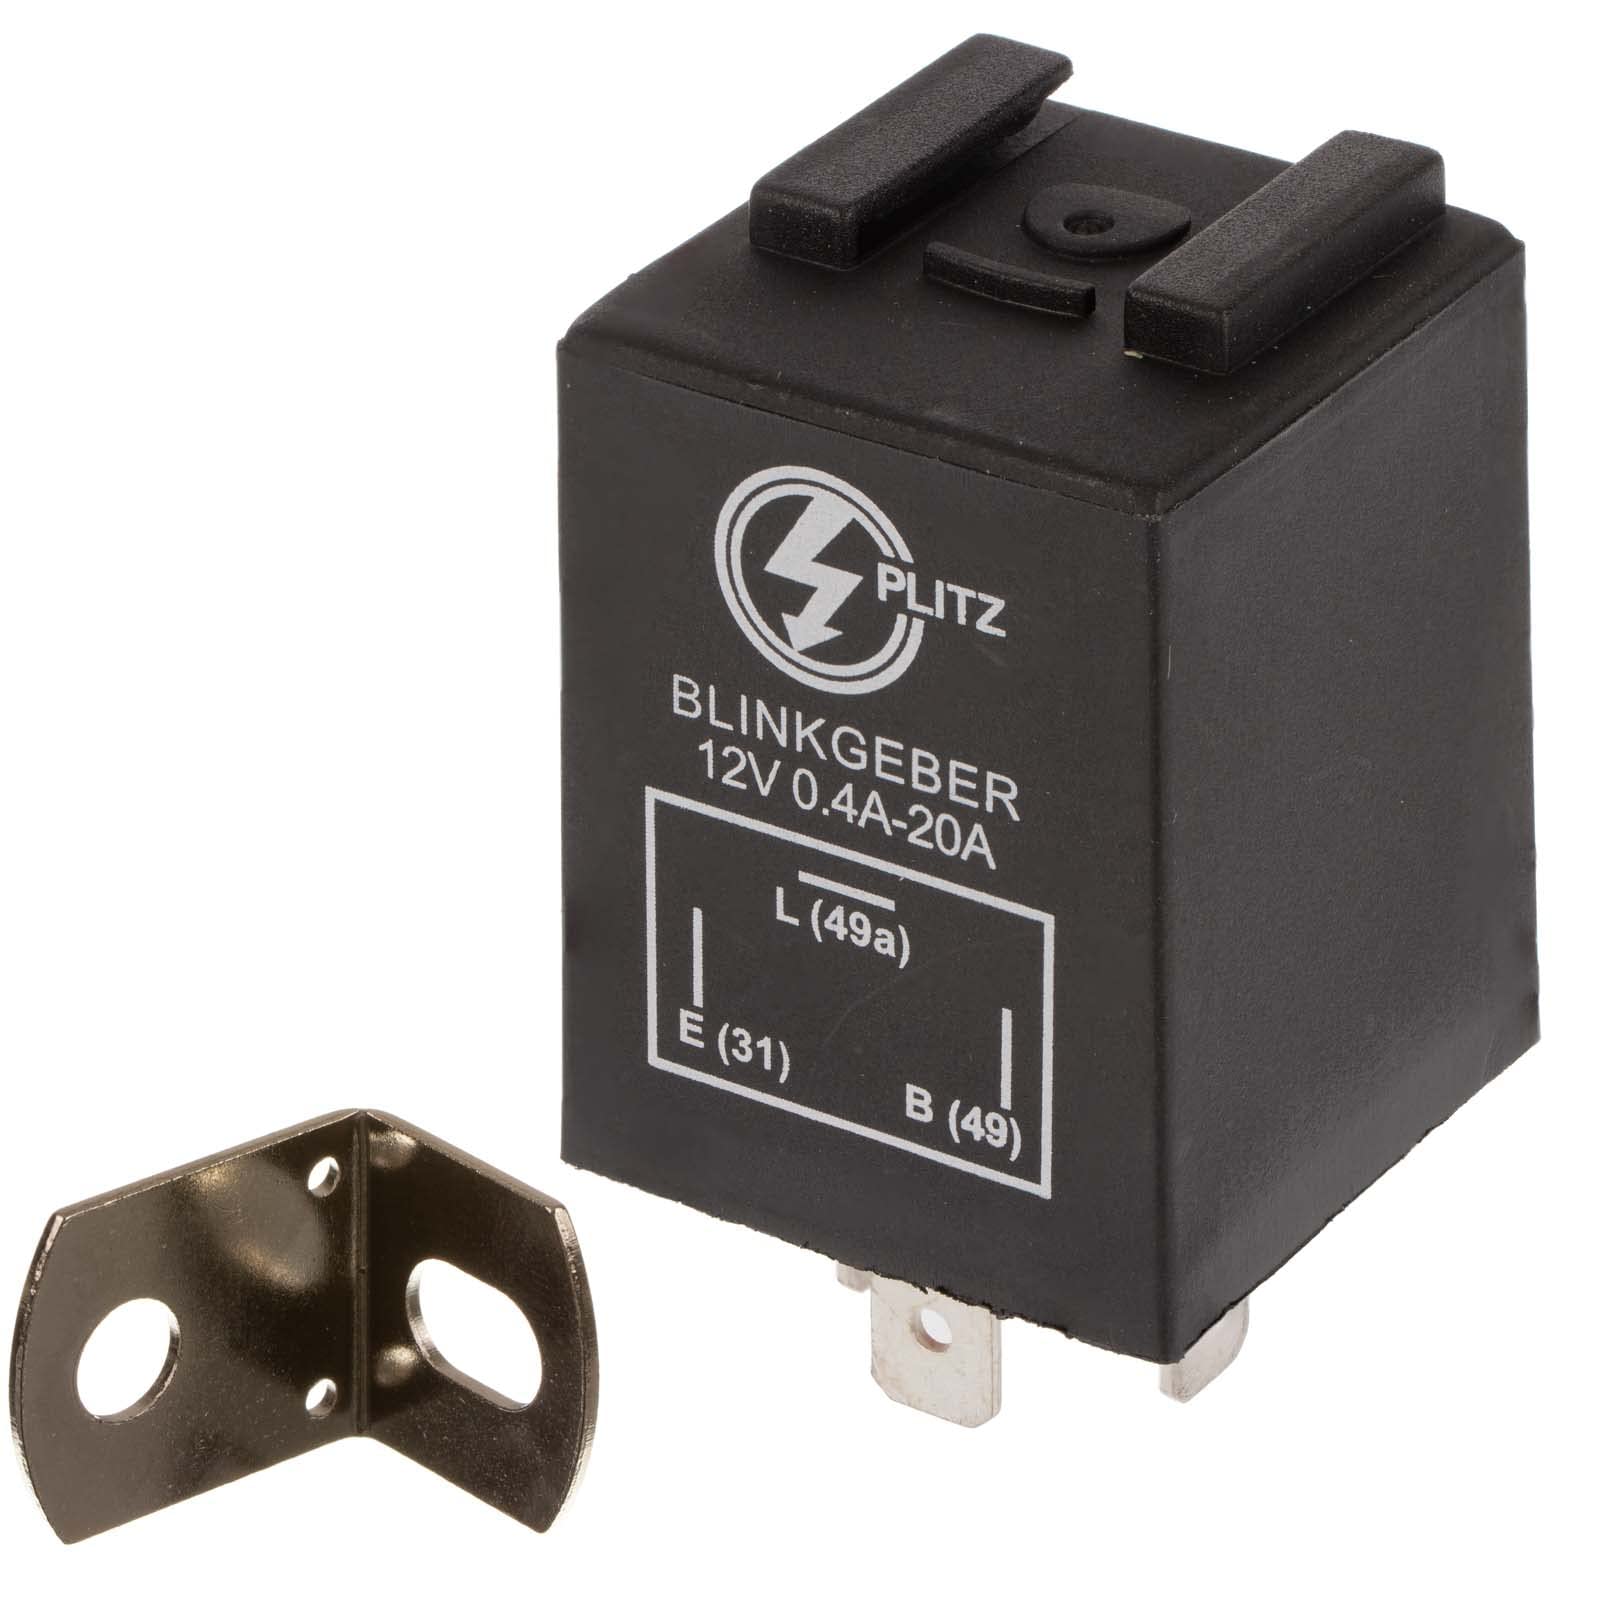 Elektronischer Blinkgeber 12V PLITZ - 3-poliger Anschluß (31, 49, 49a) - 0,02- 20A entspricht 0,24-240W - universell einsetzbar - mit Haltewinkel von PLITZ